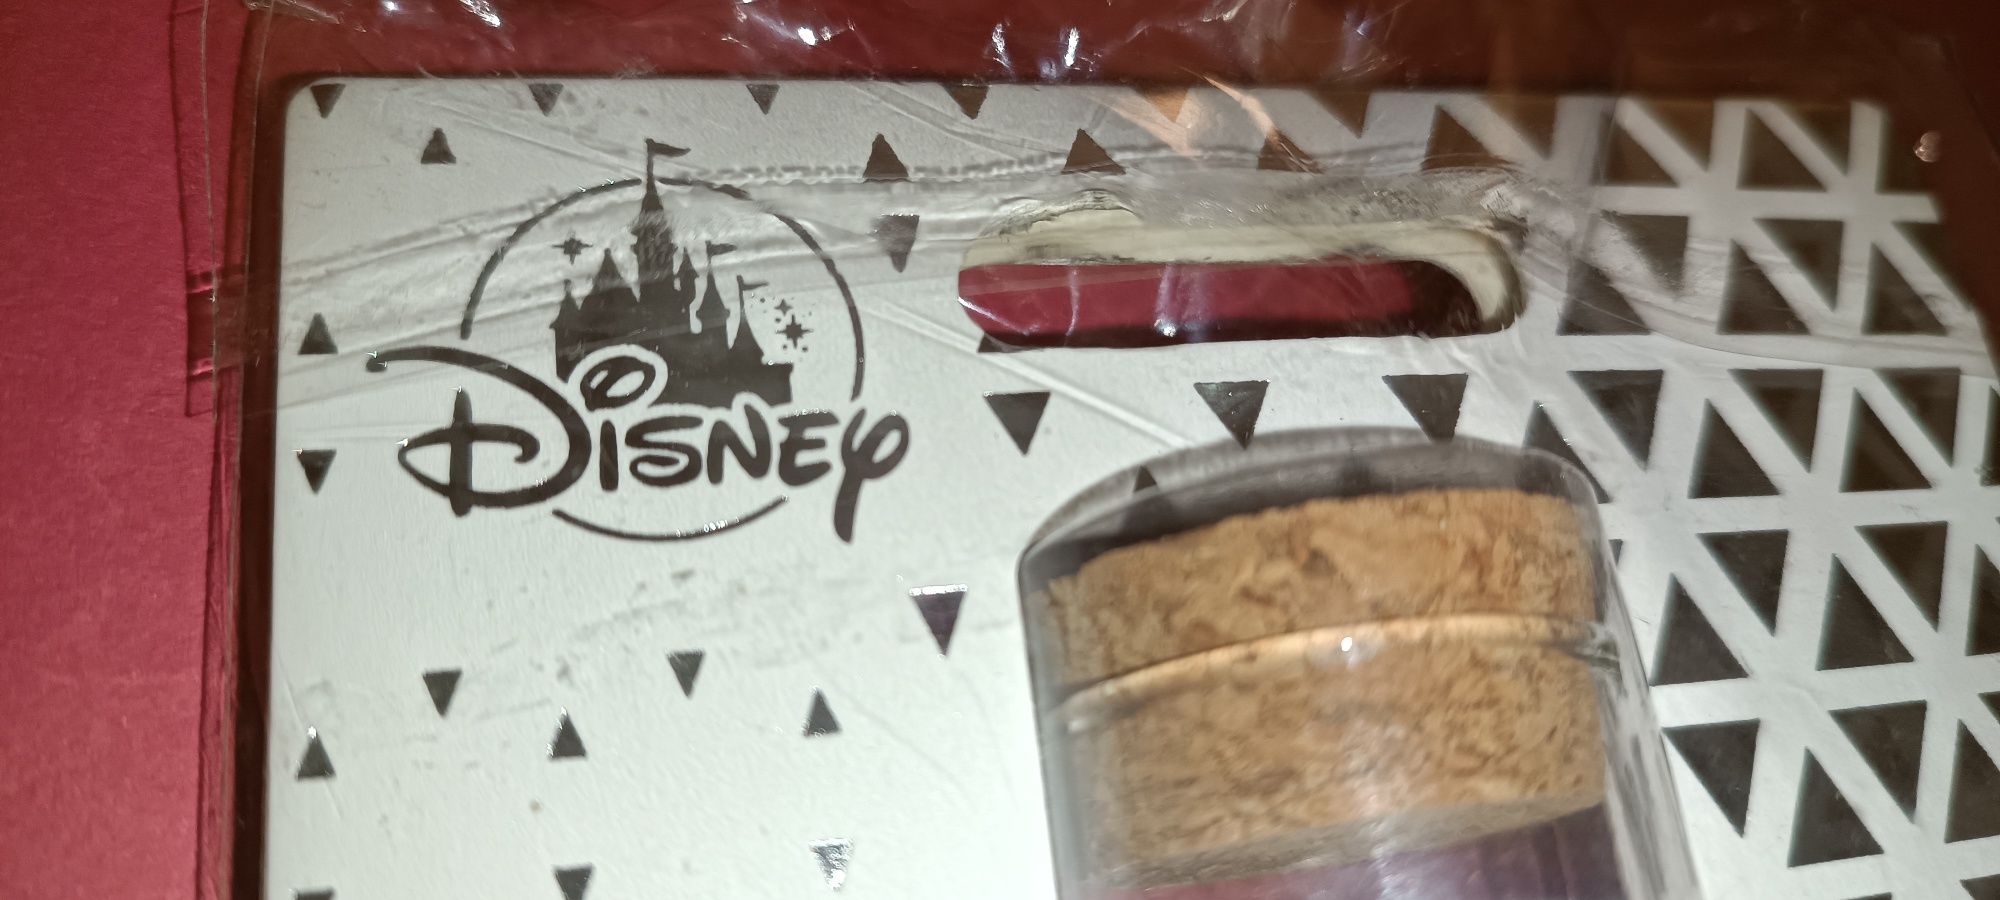 Primeiro PIN oficial da Disney em 2018 realizado em tubo Os 7 Anões Se